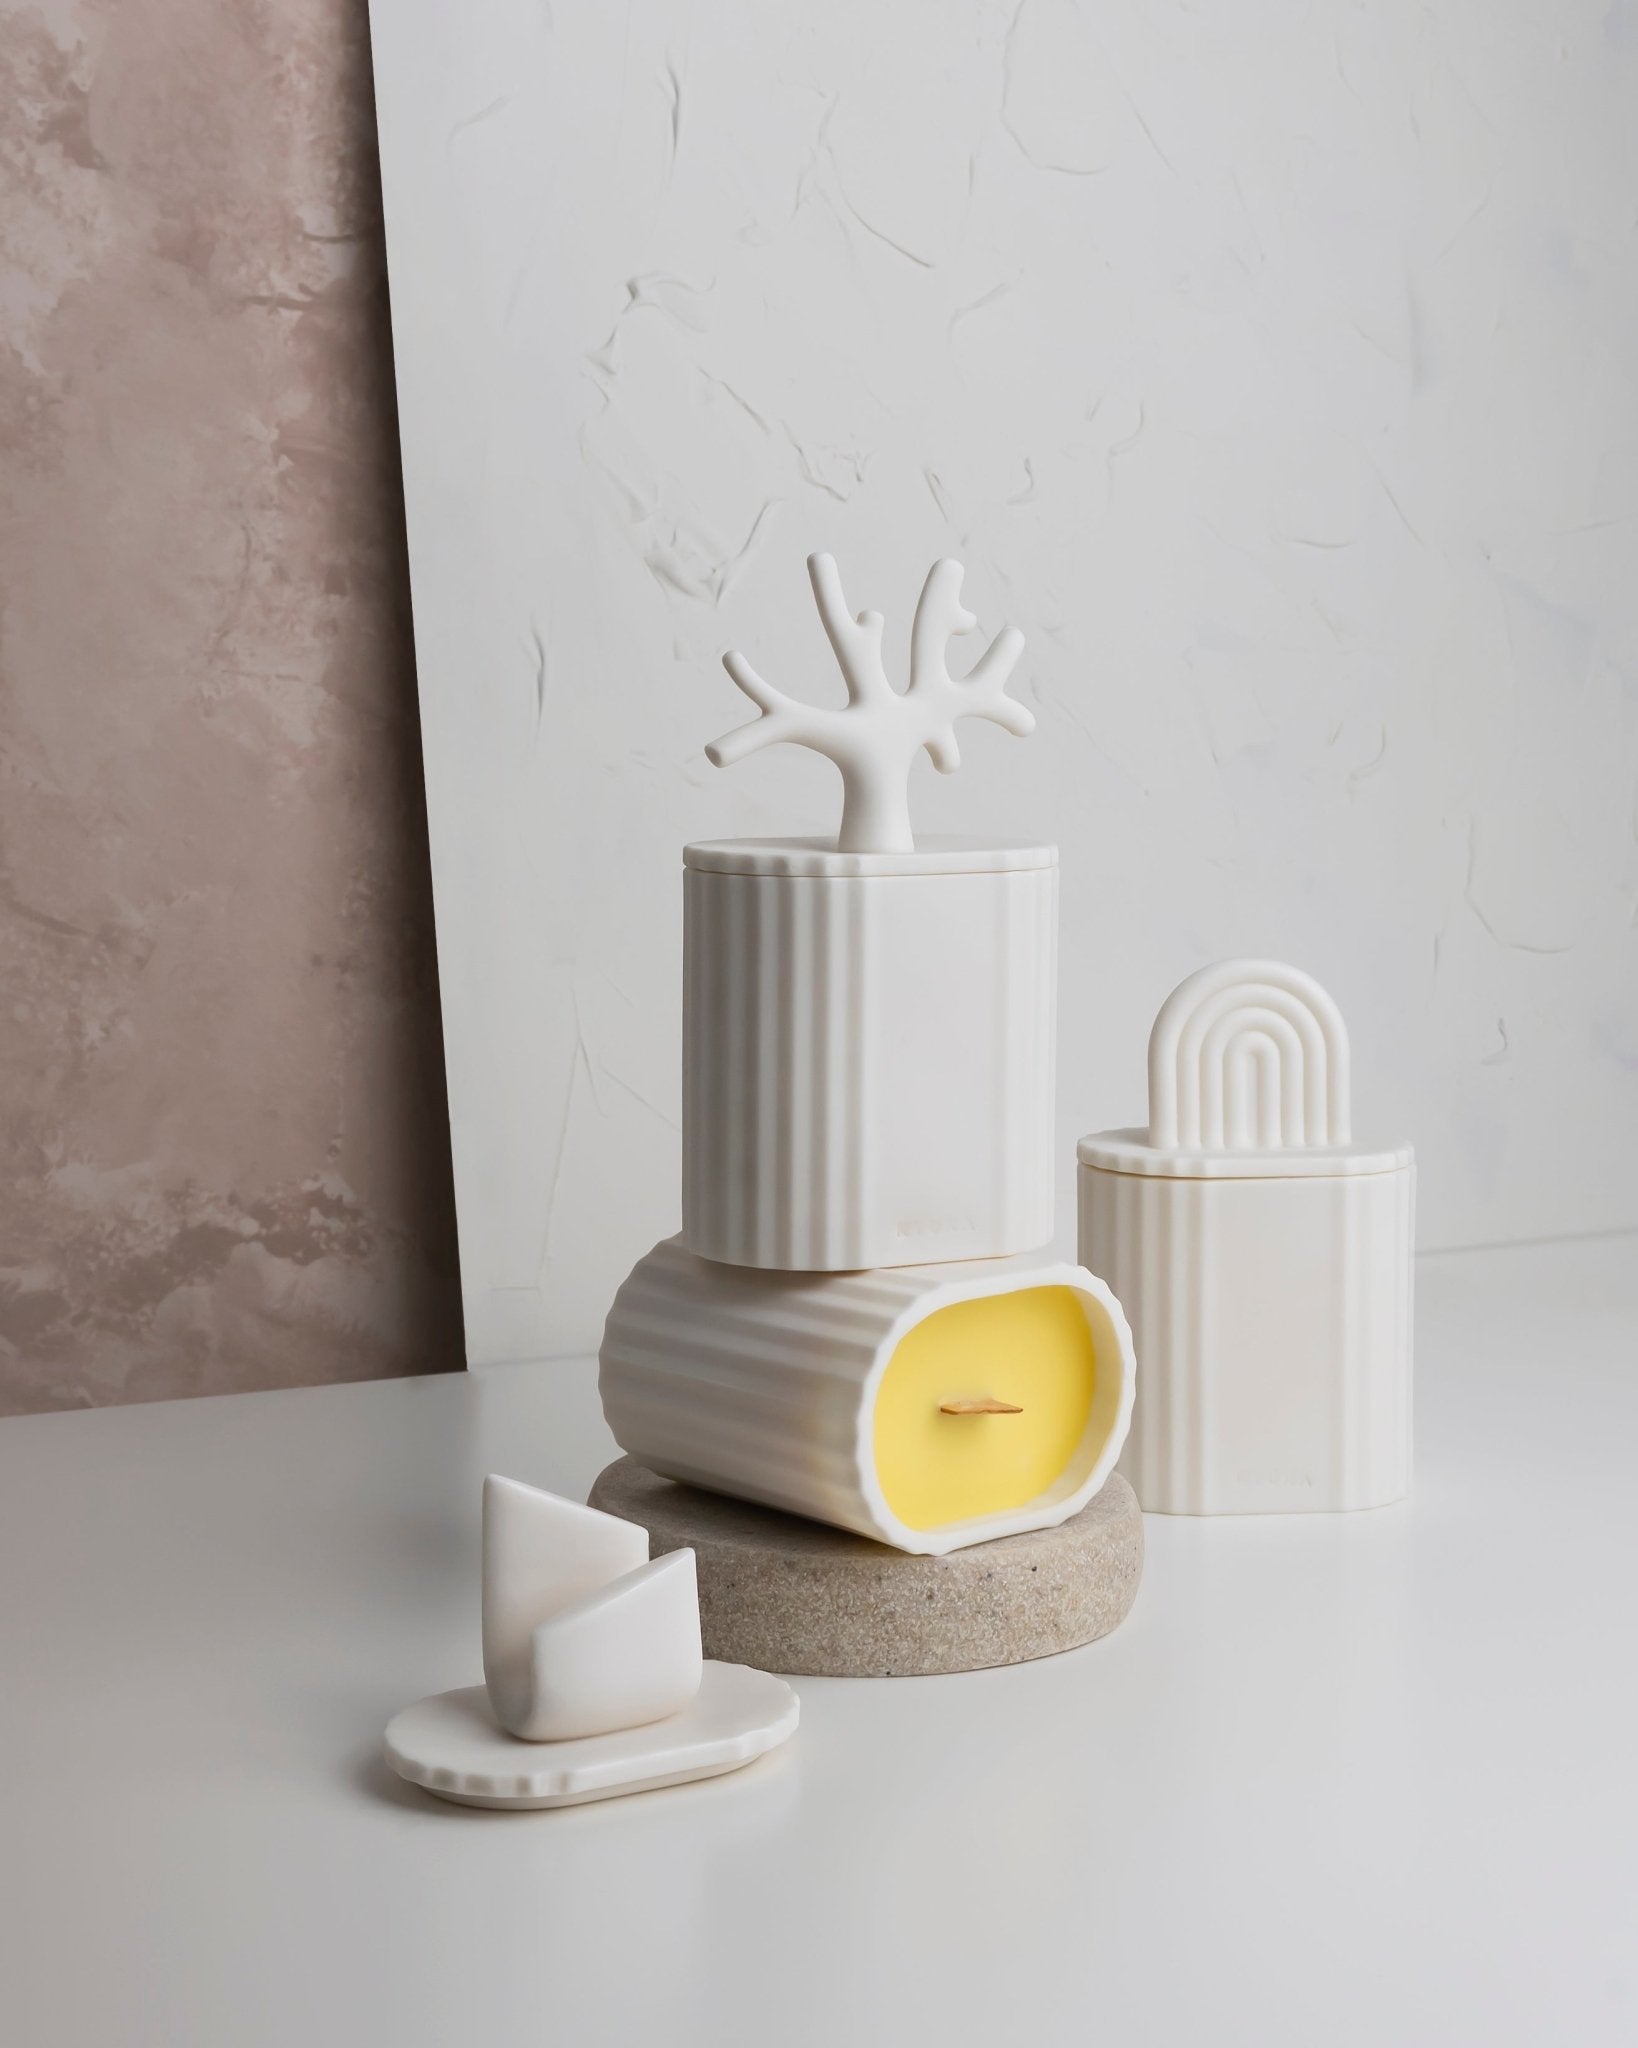 Ki - świeca z porcelany Parian - Kyuka Design